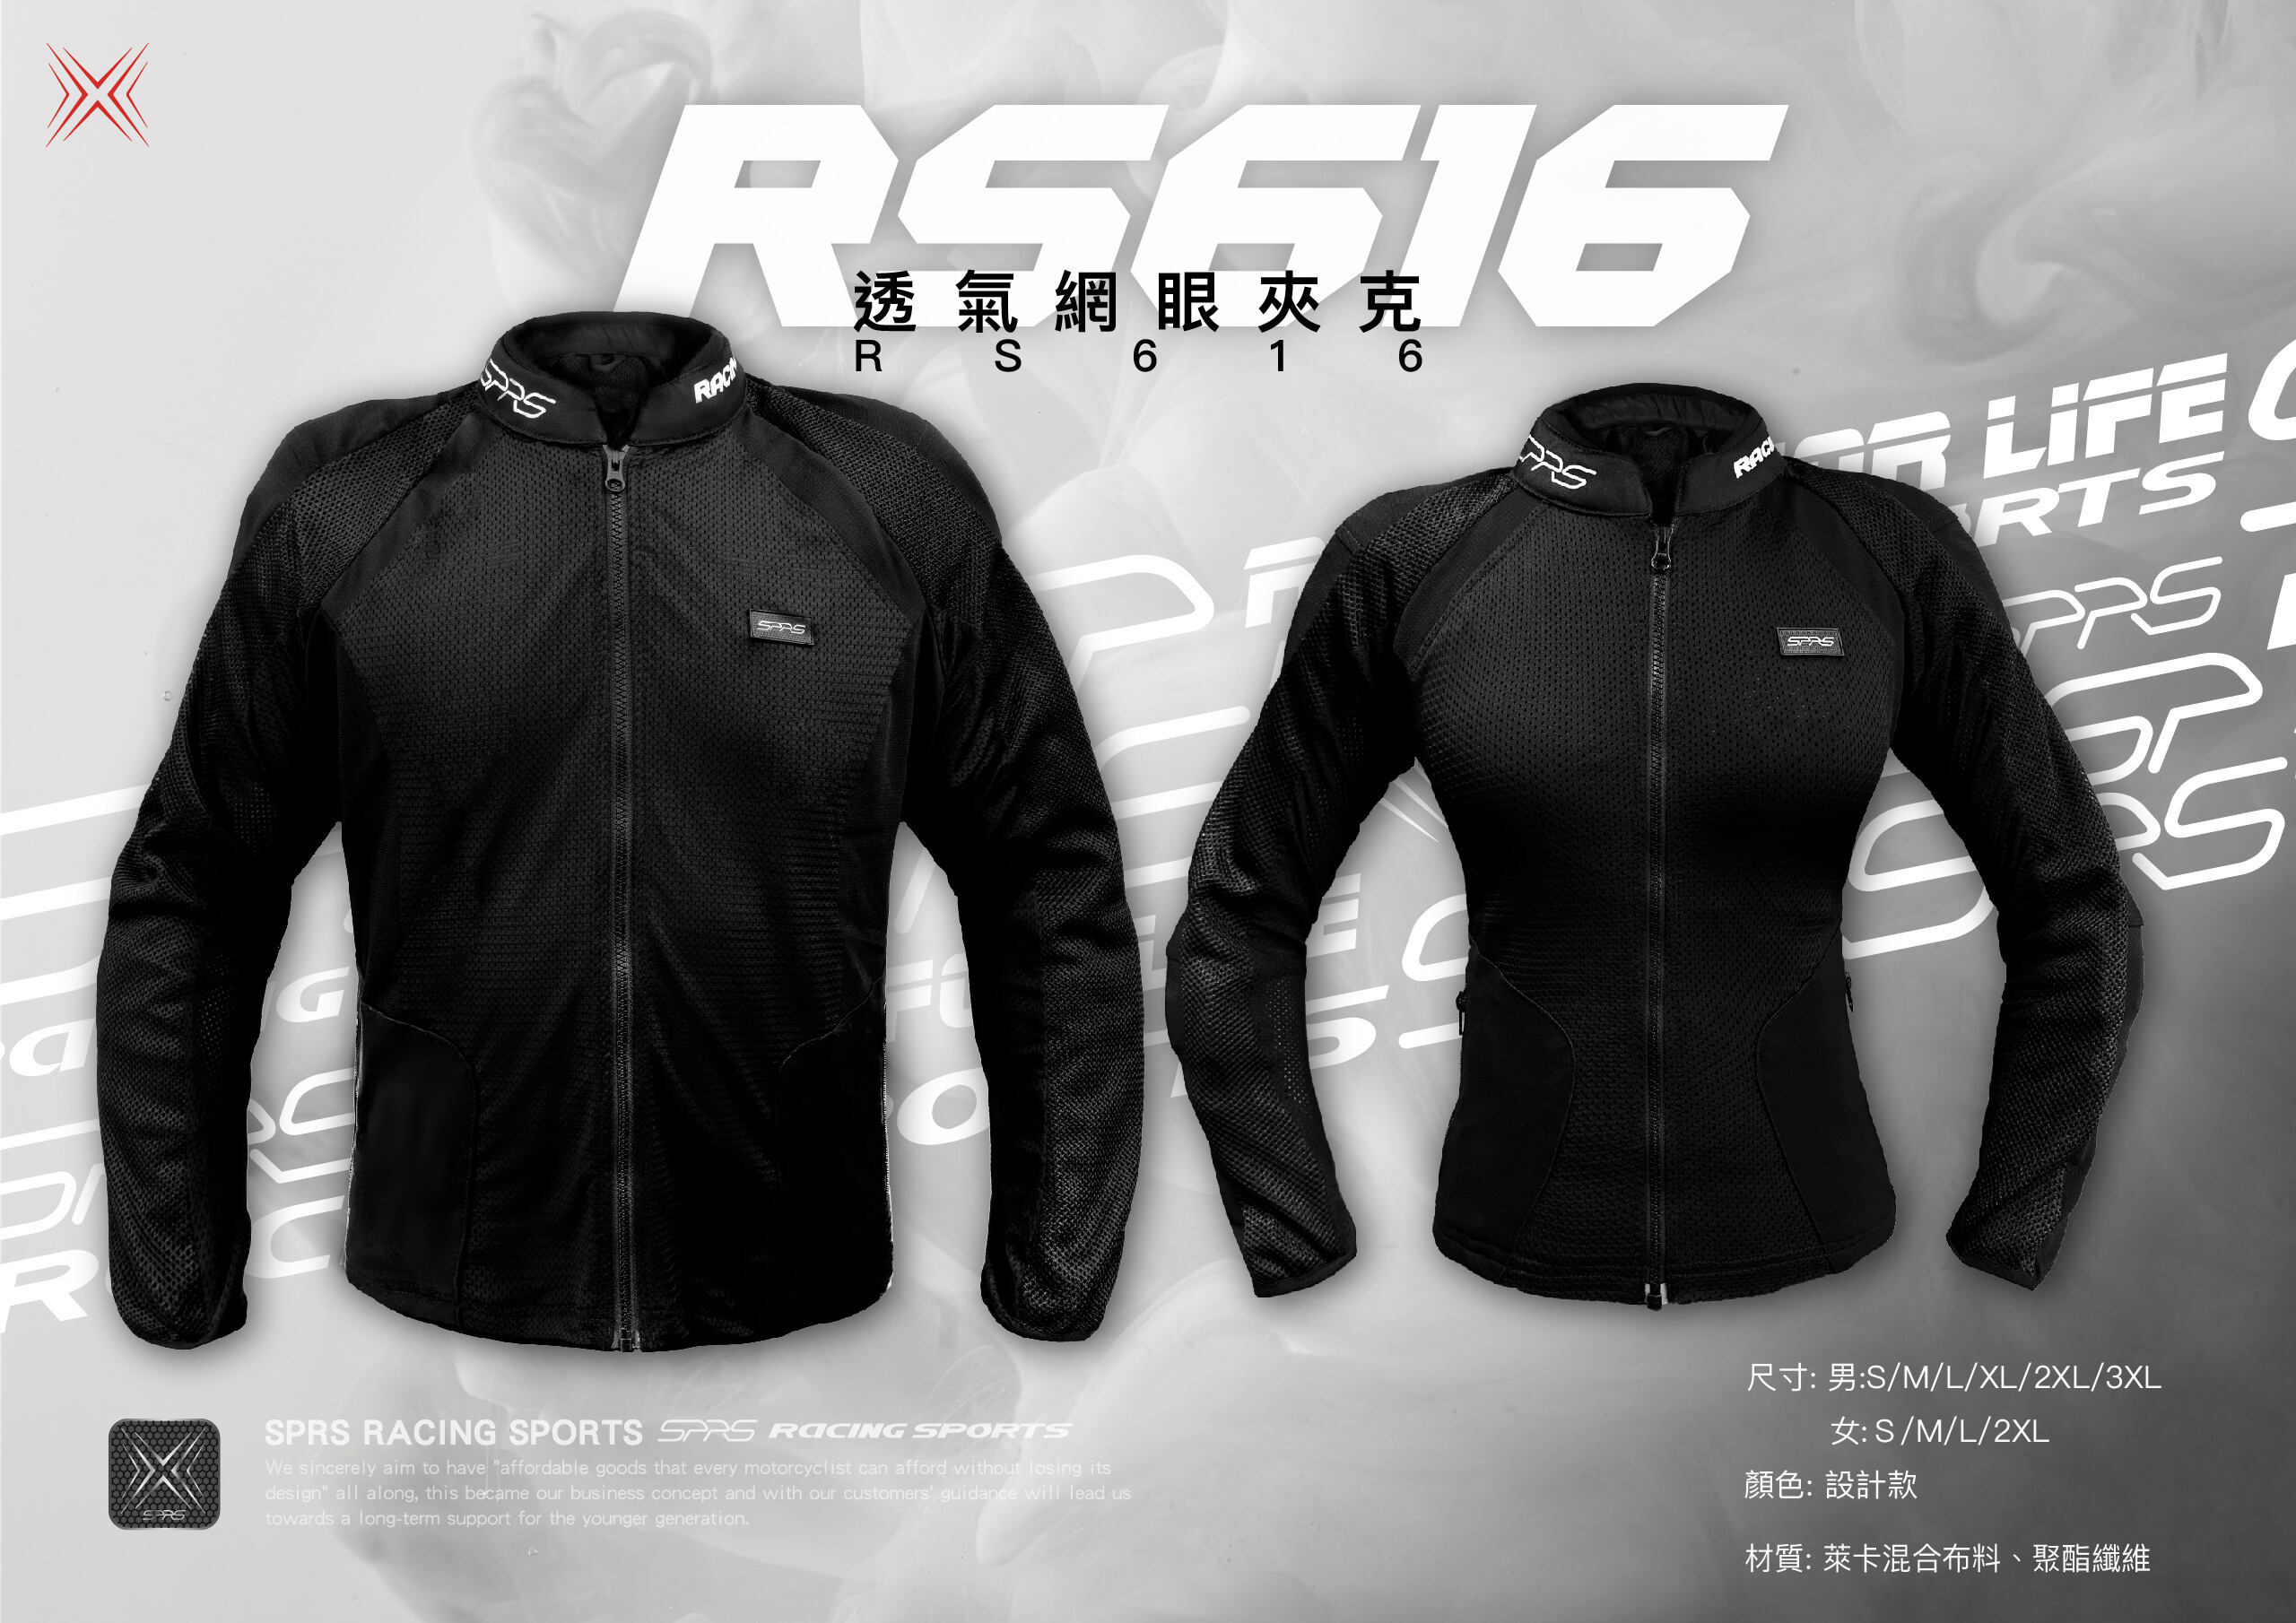 【SPRS(Speed-R Sports)】RS616 透氣網眼夾克 (男女同款) -  Webike摩托百貨